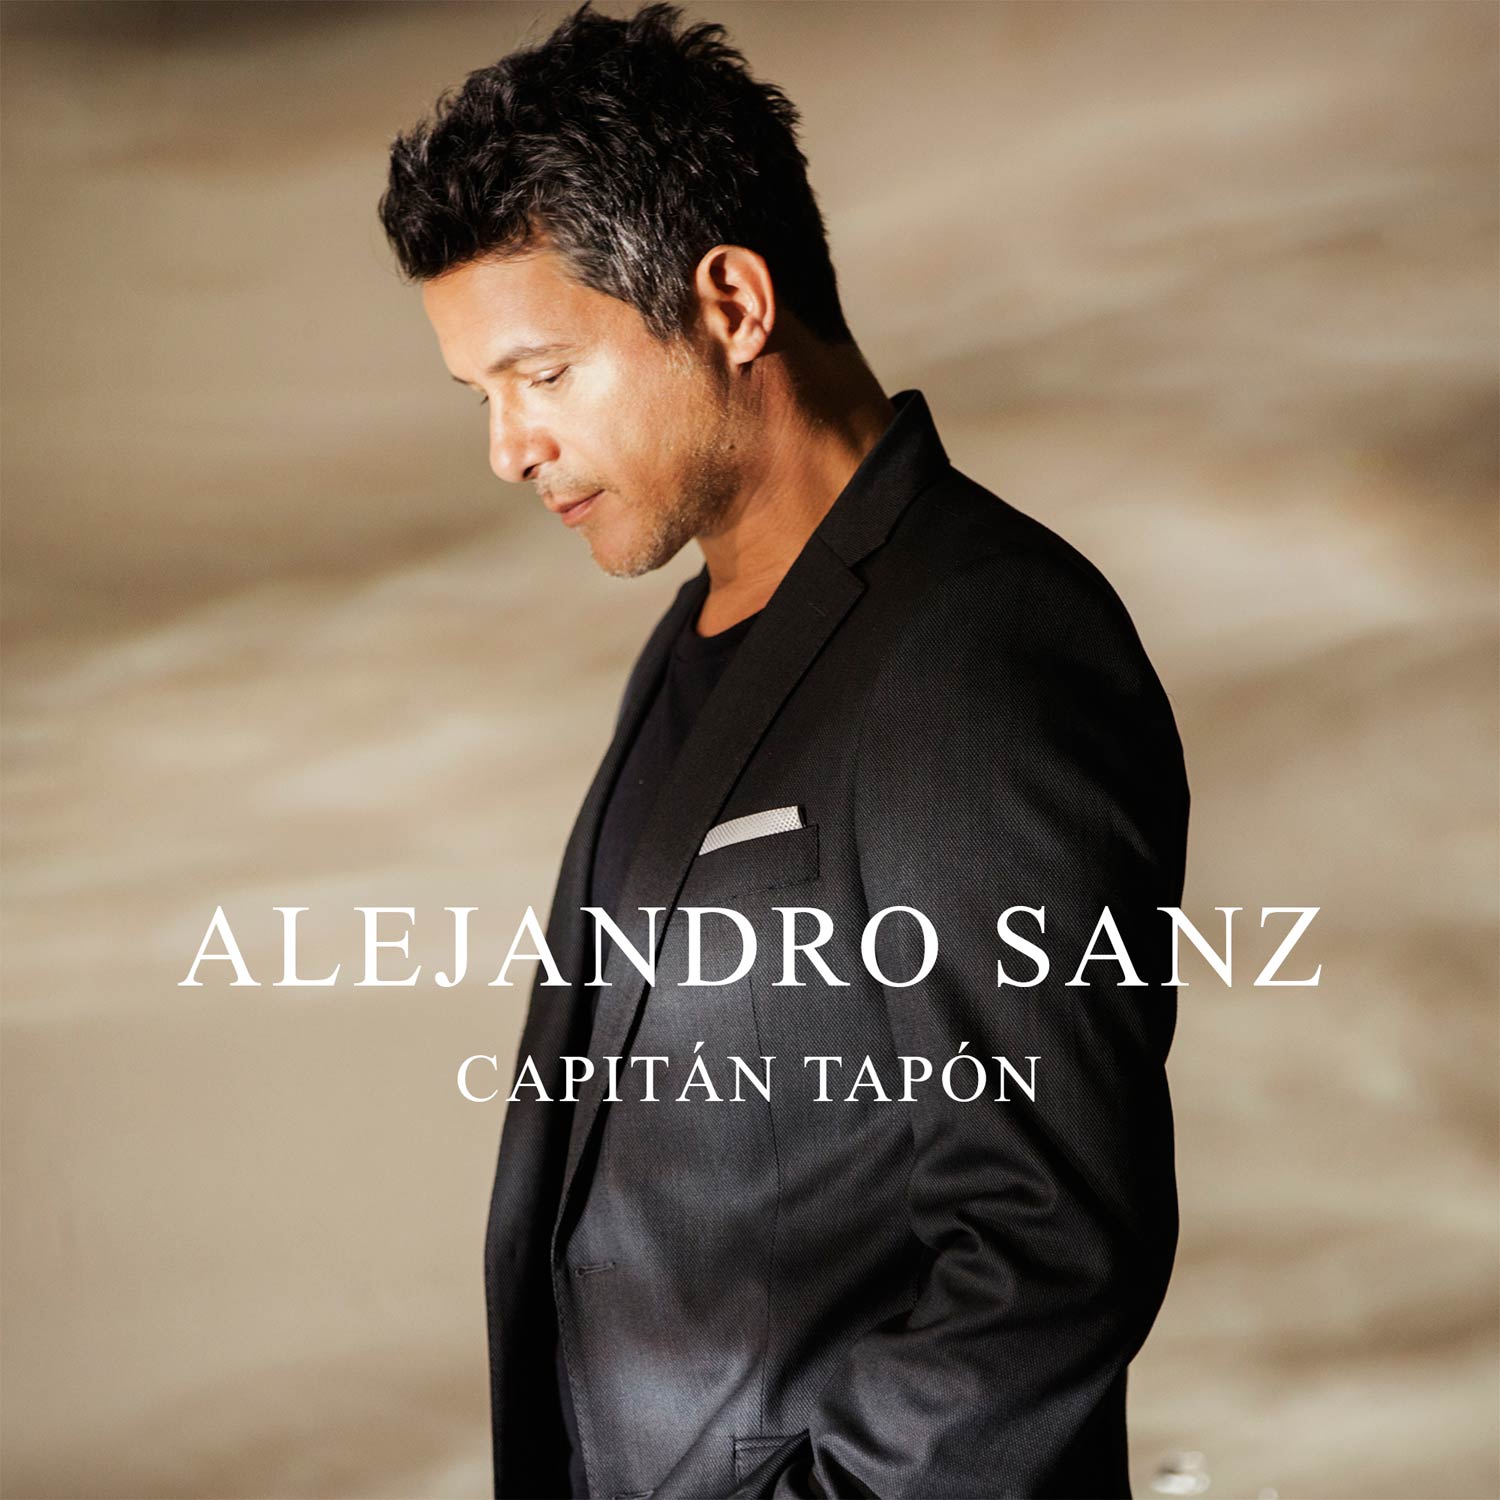 Alejandro Sanz: Capitán tapón, la portada de la canción